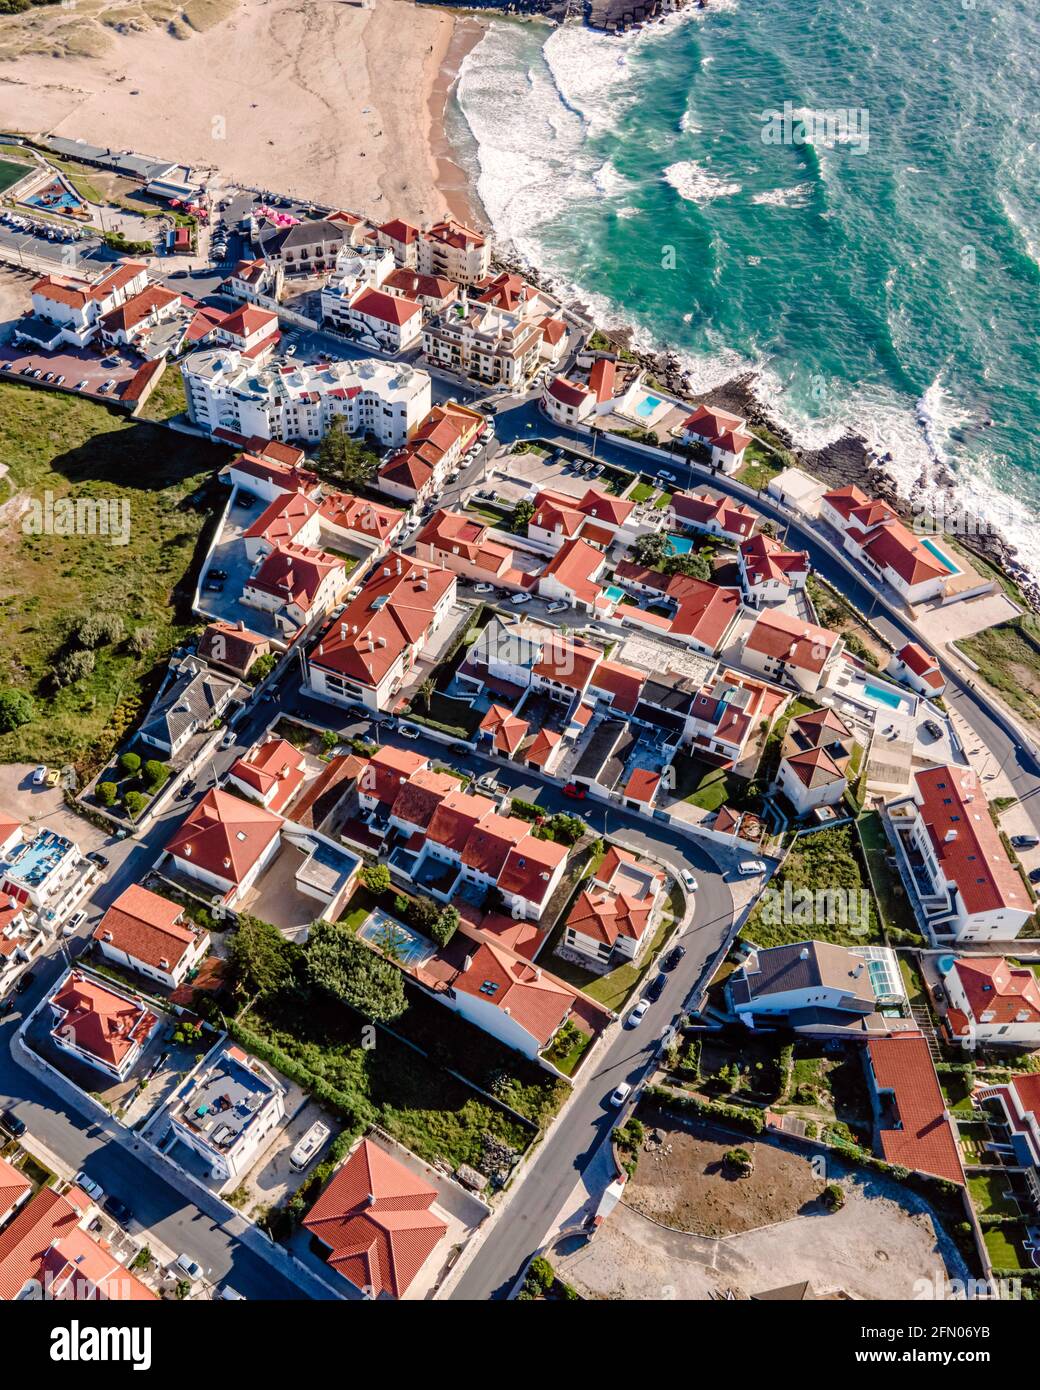 Luftaufnahme des kleinen Townships Praia das Macas von oben, Blick auf das  rote Dach einer kleinen Stadt an der portugiesischen Küste, Colares,  Portugal Stockfotografie - Alamy